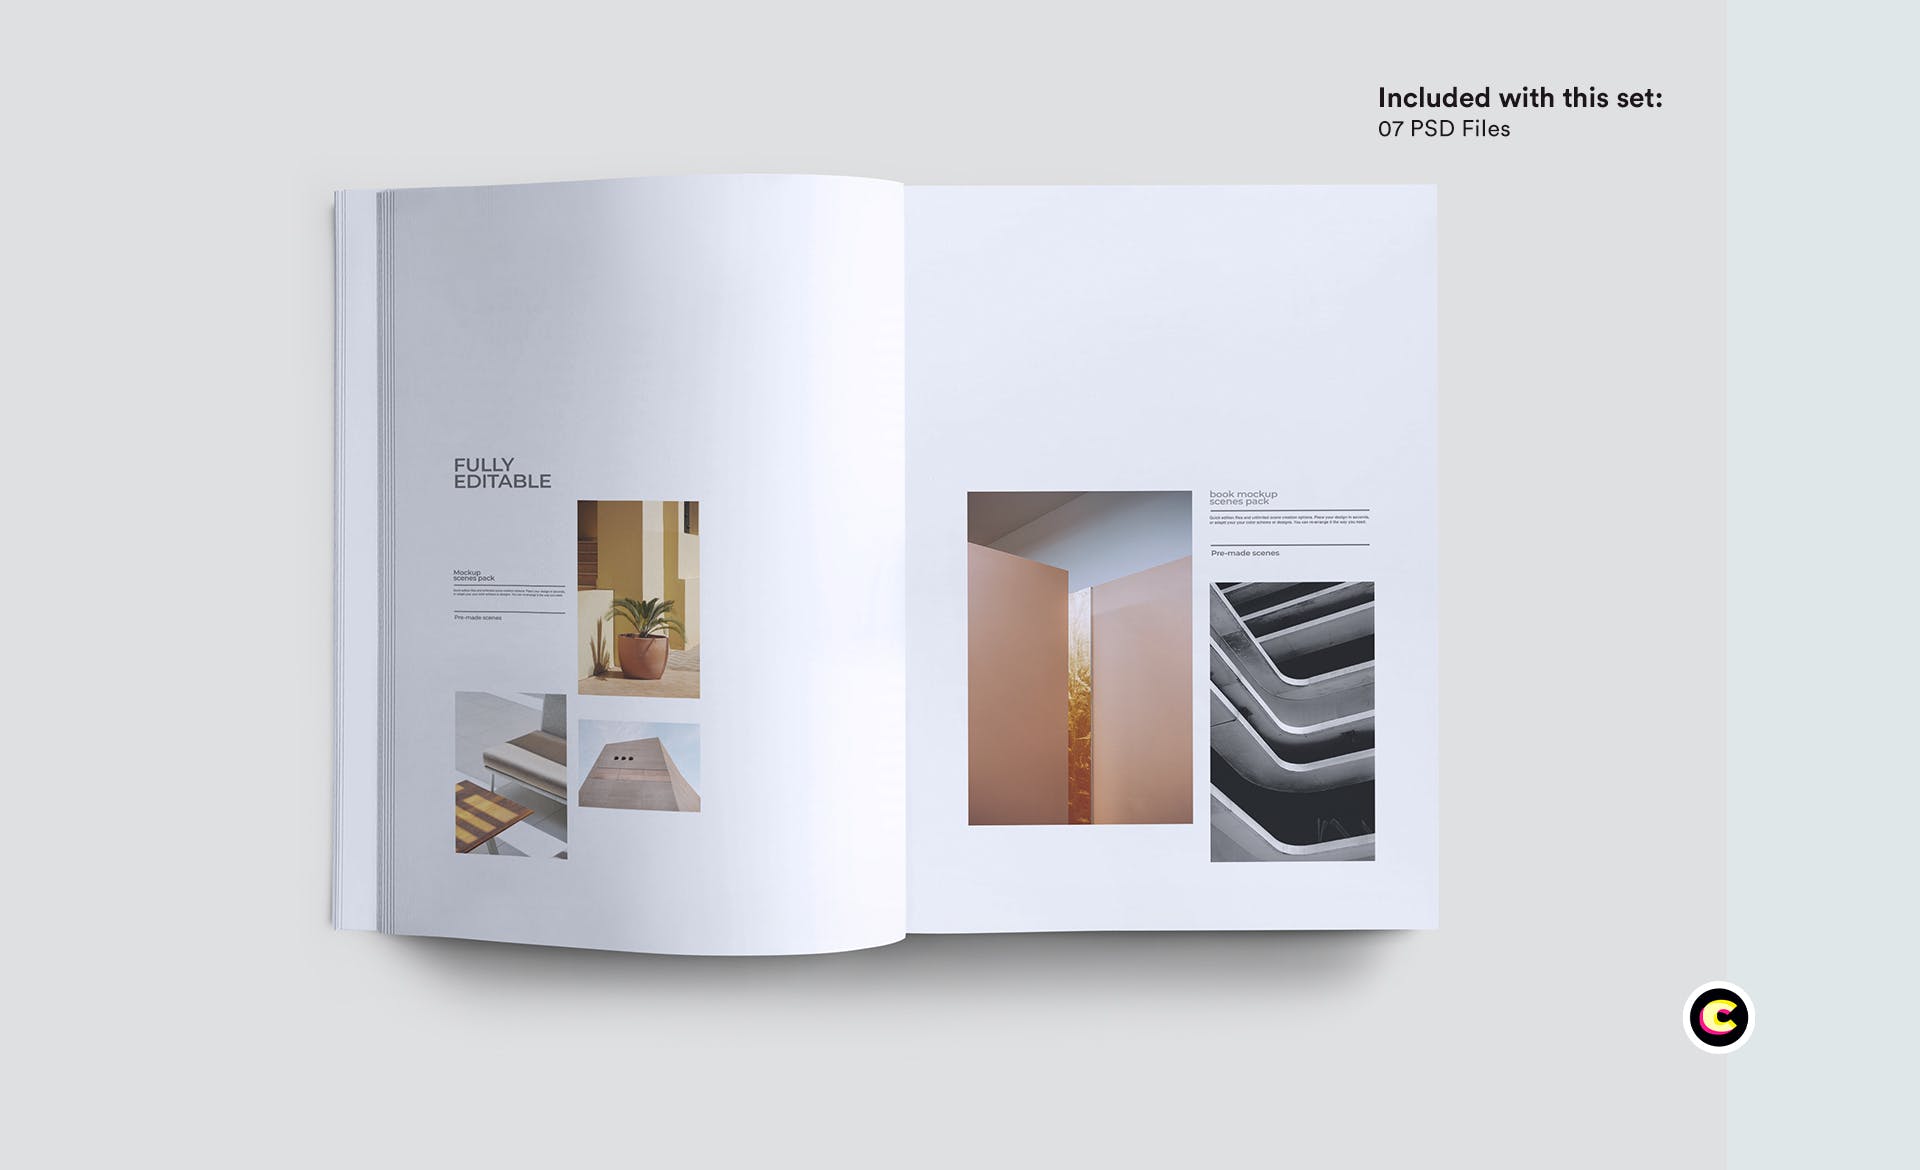 企业品牌画册/宣传册封面设计效果图样机第一素材精选 Brochure Mockup插图(5)